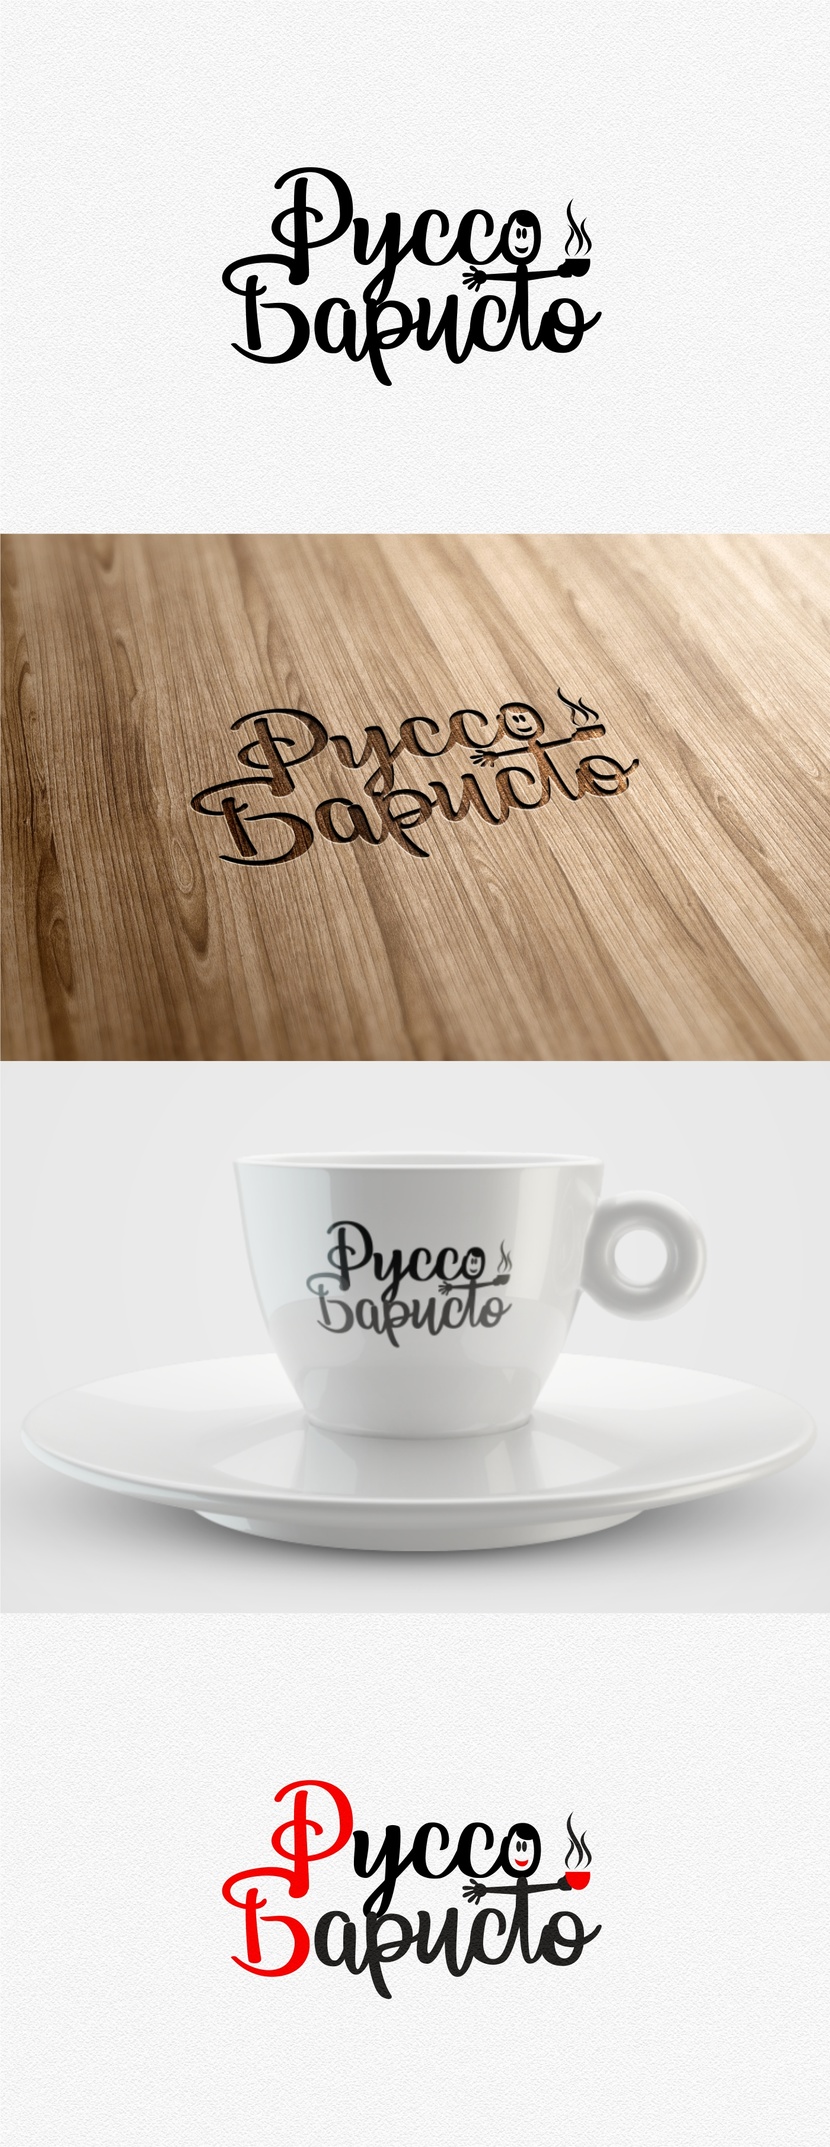 Создание логотипа для Кофейни - алкобара "Руссо баристо"  -  автор Андрей Марковский